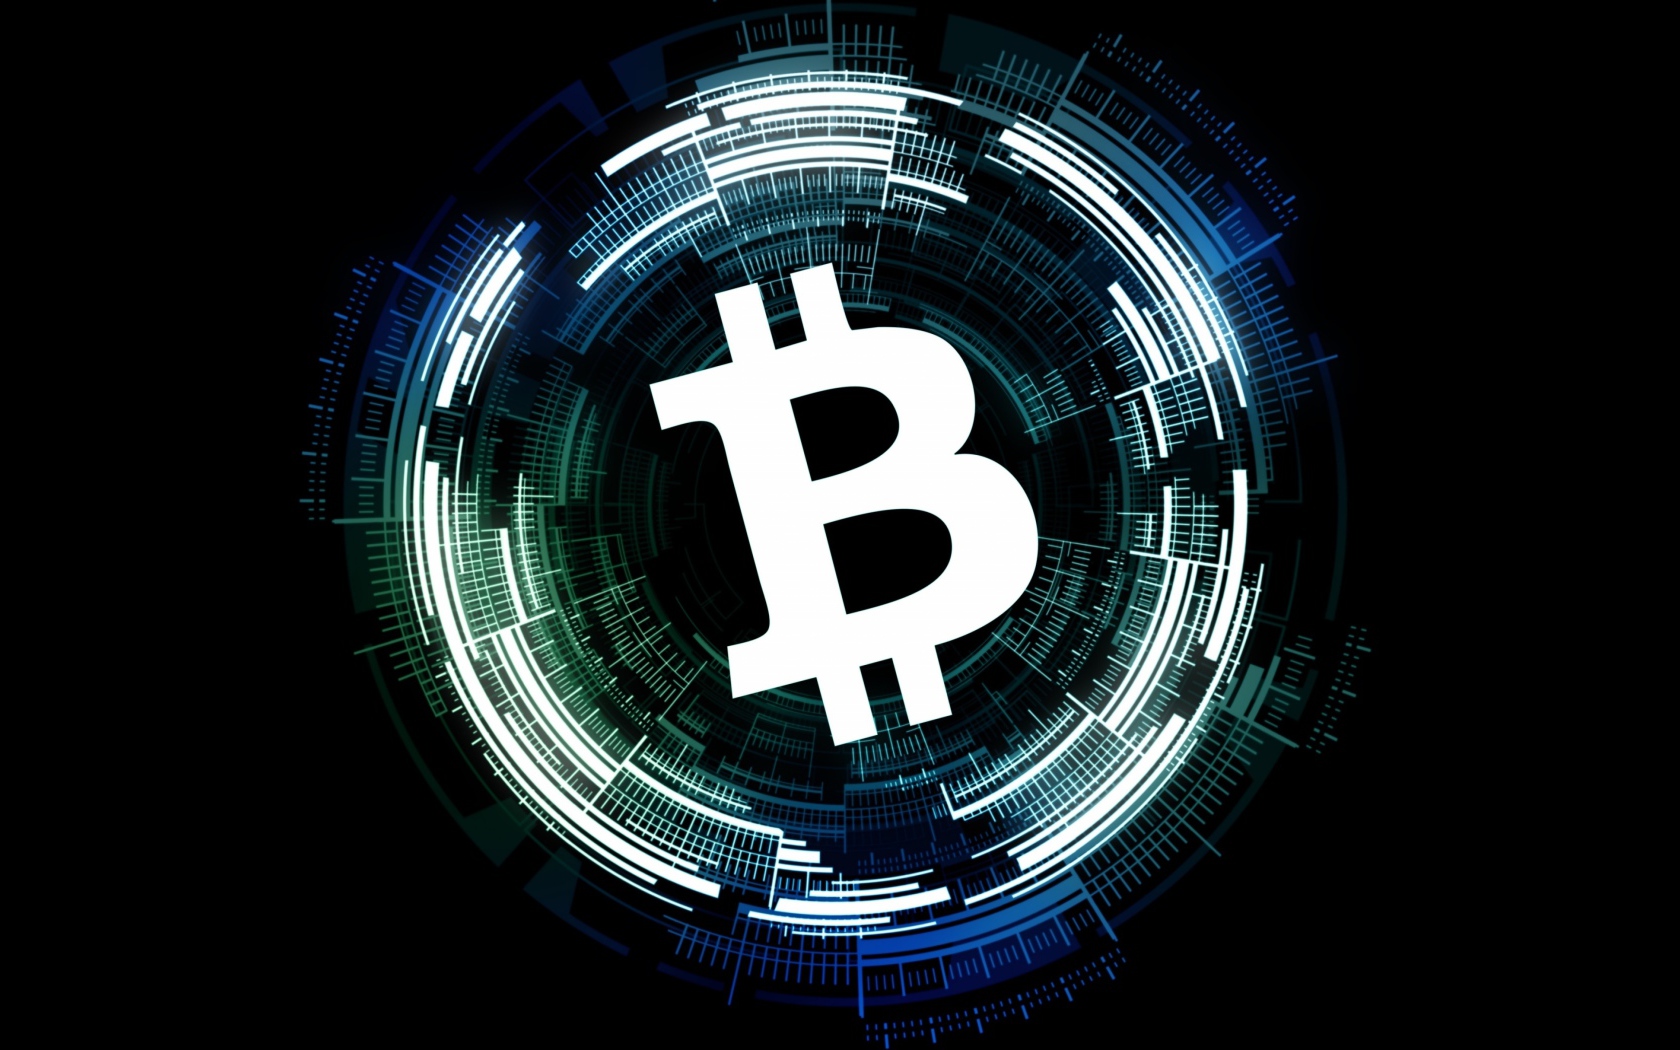 Bitcoin white icon on black background